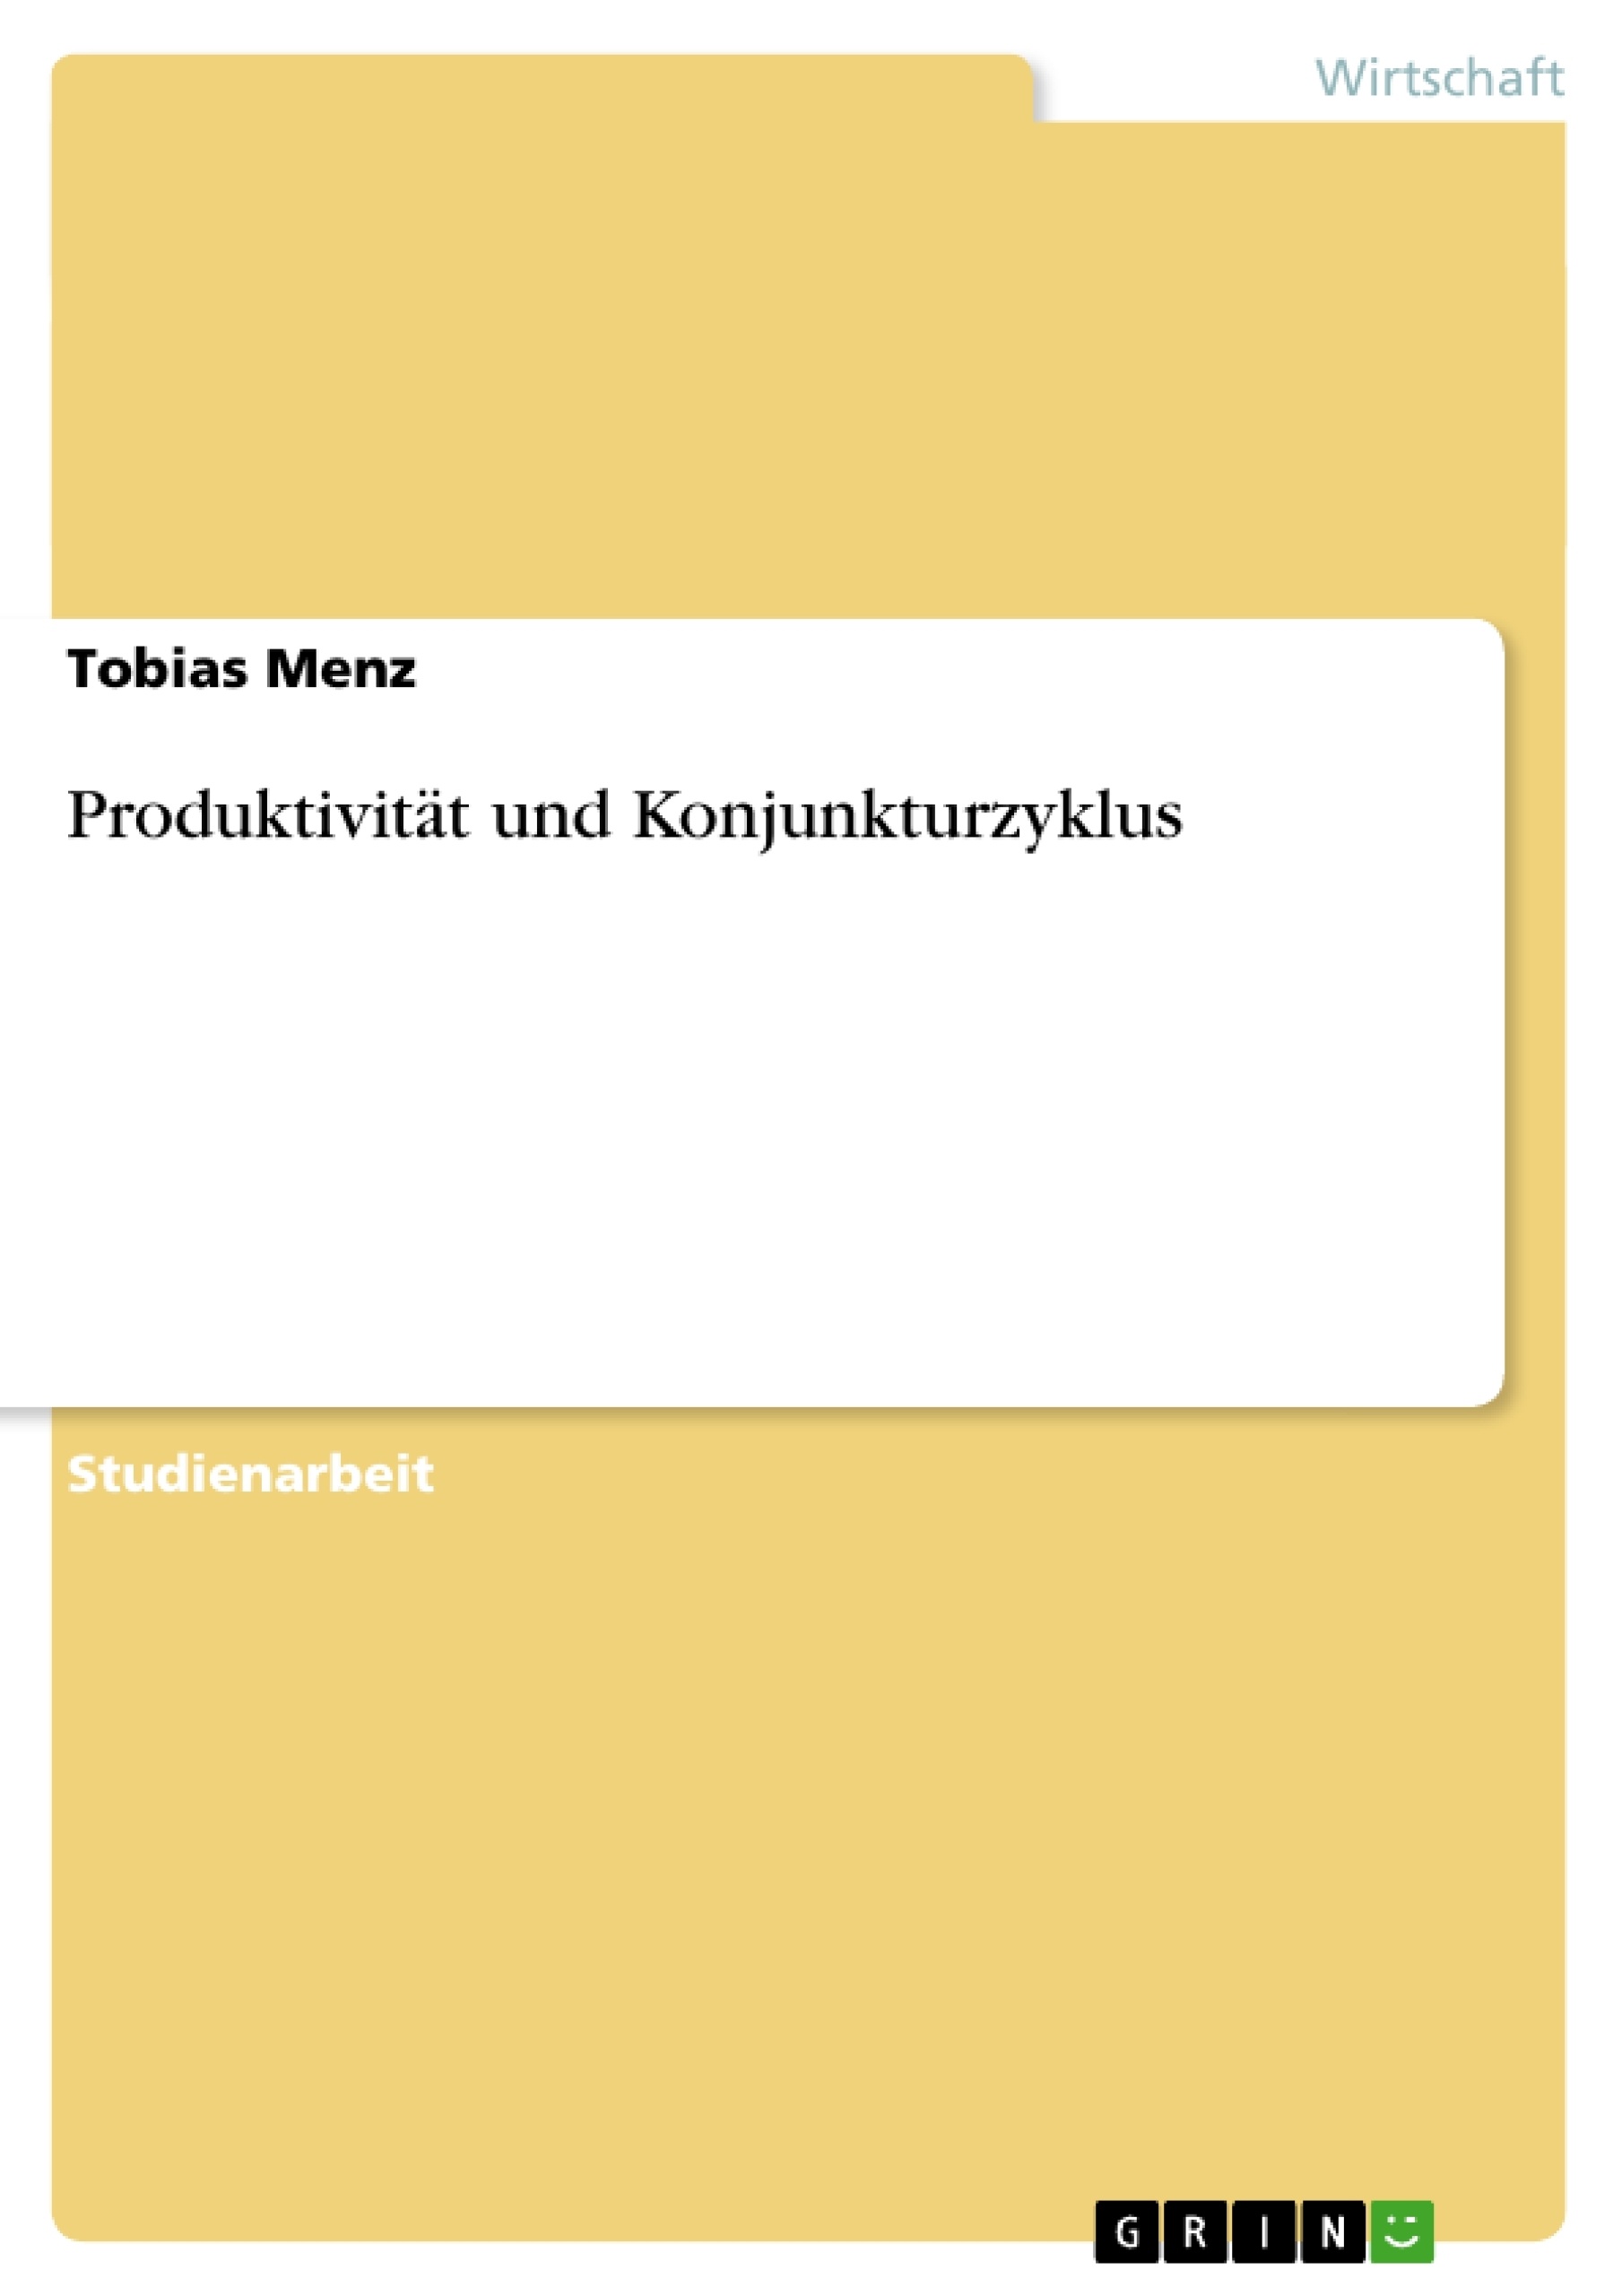 Titre: Produktivität und Konjunkturzyklus